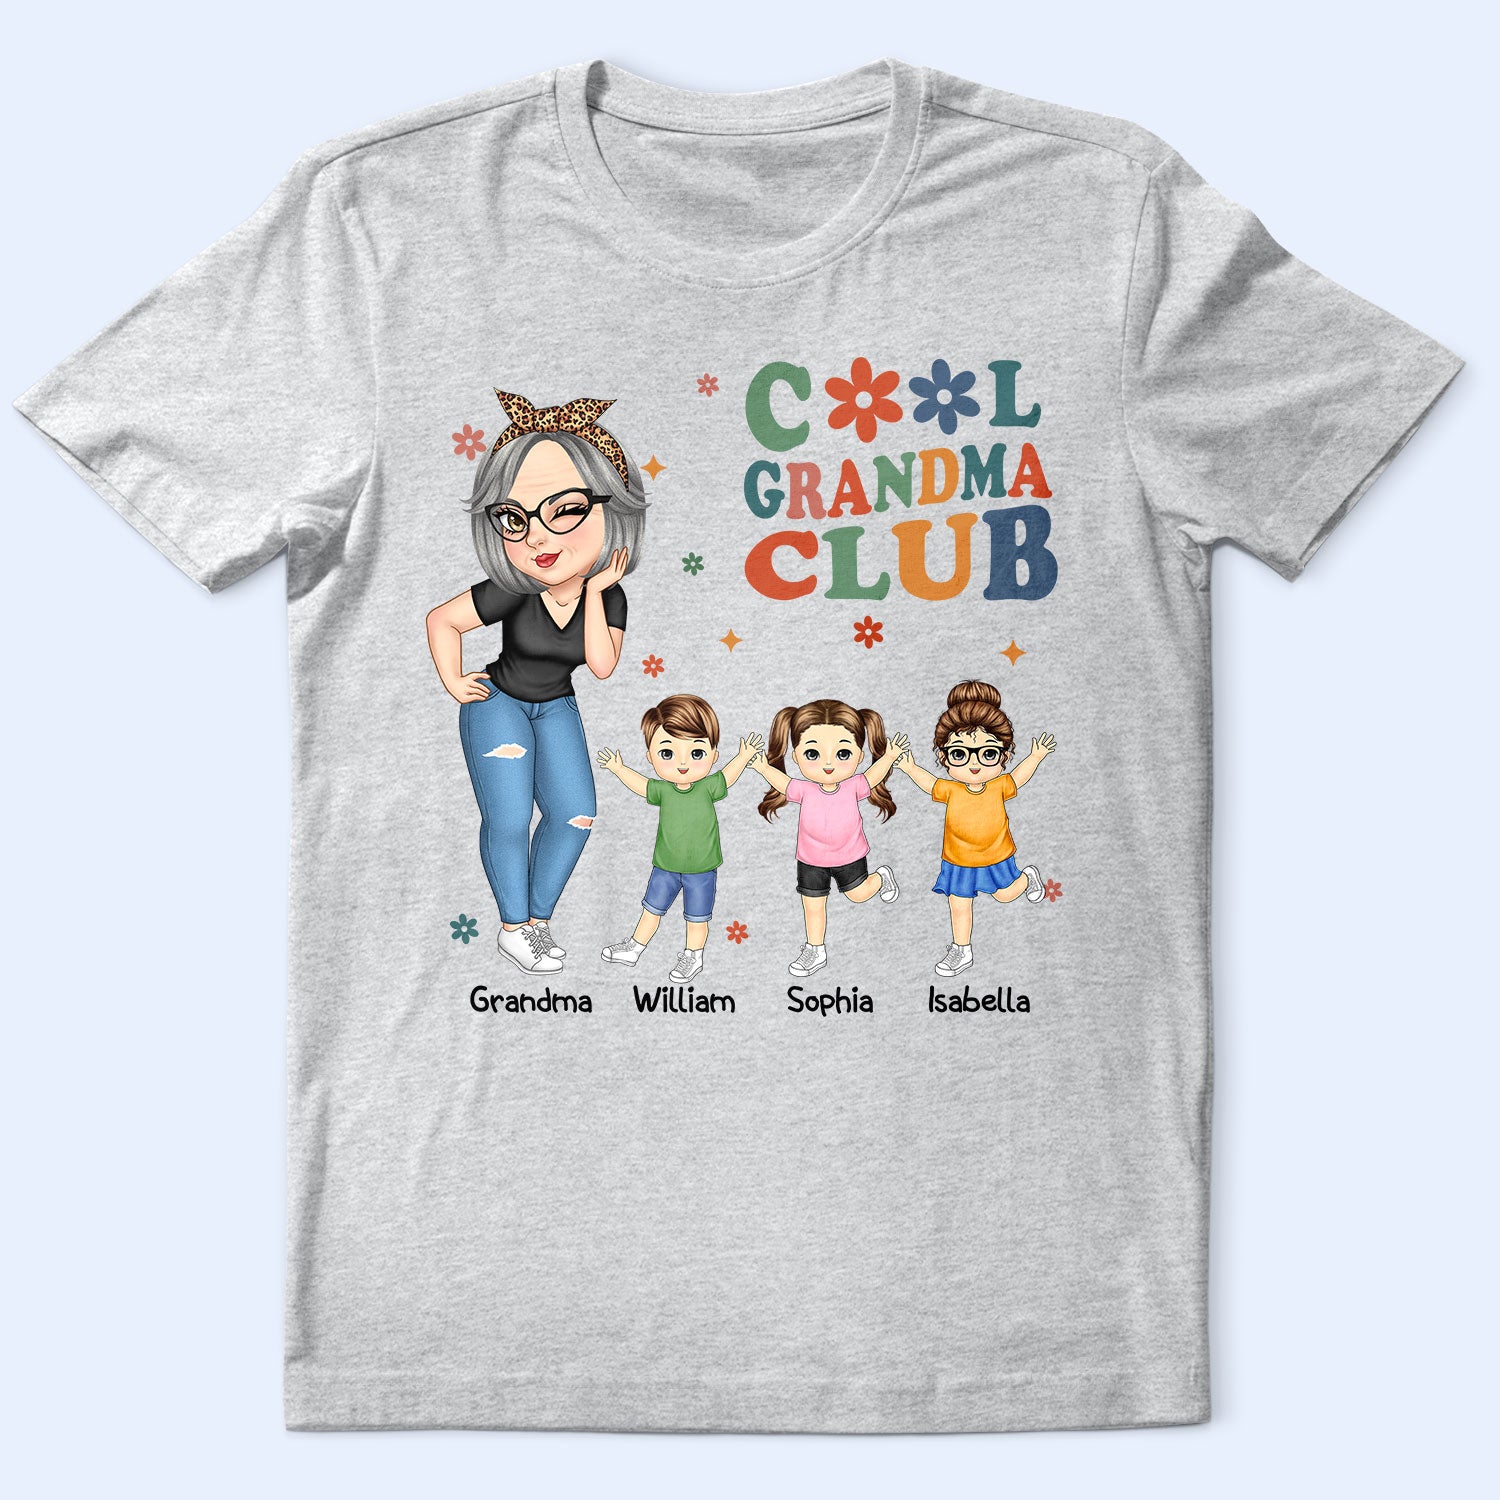 Cool Grandma Club - Funny Gift For Grandma, Mom, Nana, Gigi - Personalized T Shirt